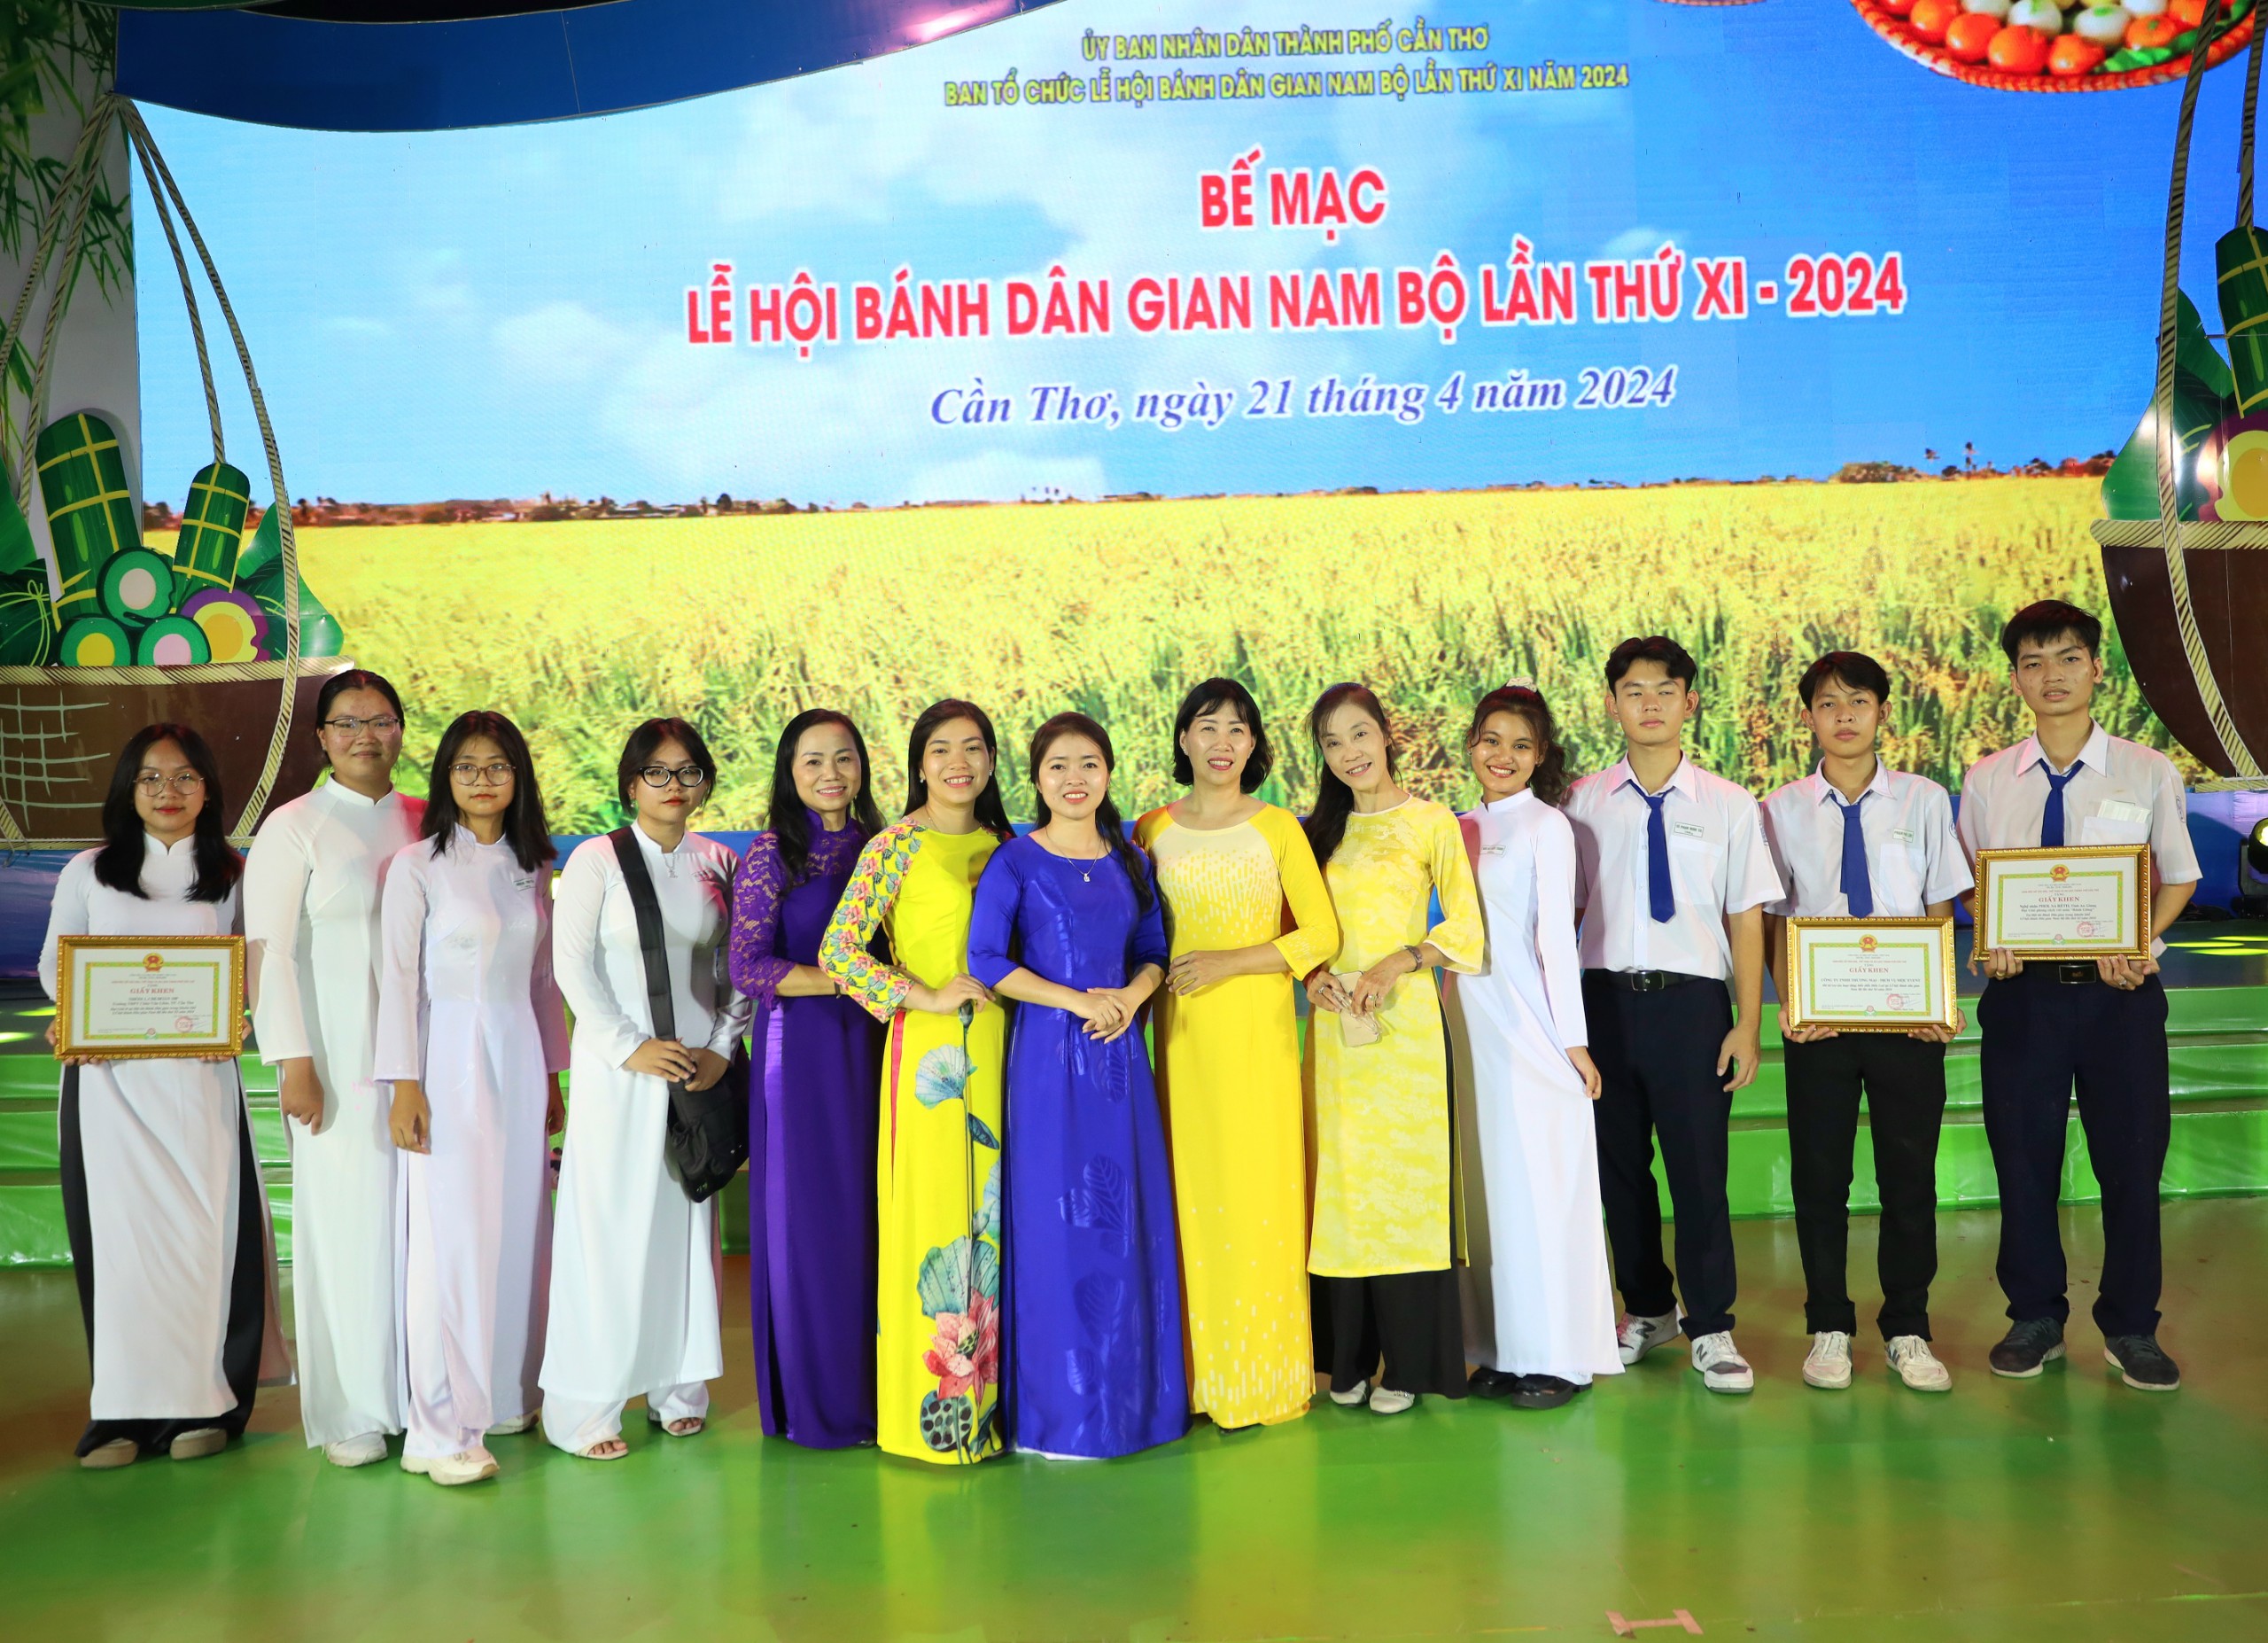 Học sinh Trường THPT Châu Văn Liêm, TP. Cần Thơ xuất sắc đạt 1 giải A và 4 giải B tại Hội thi bánh dân gian Nam bộ.